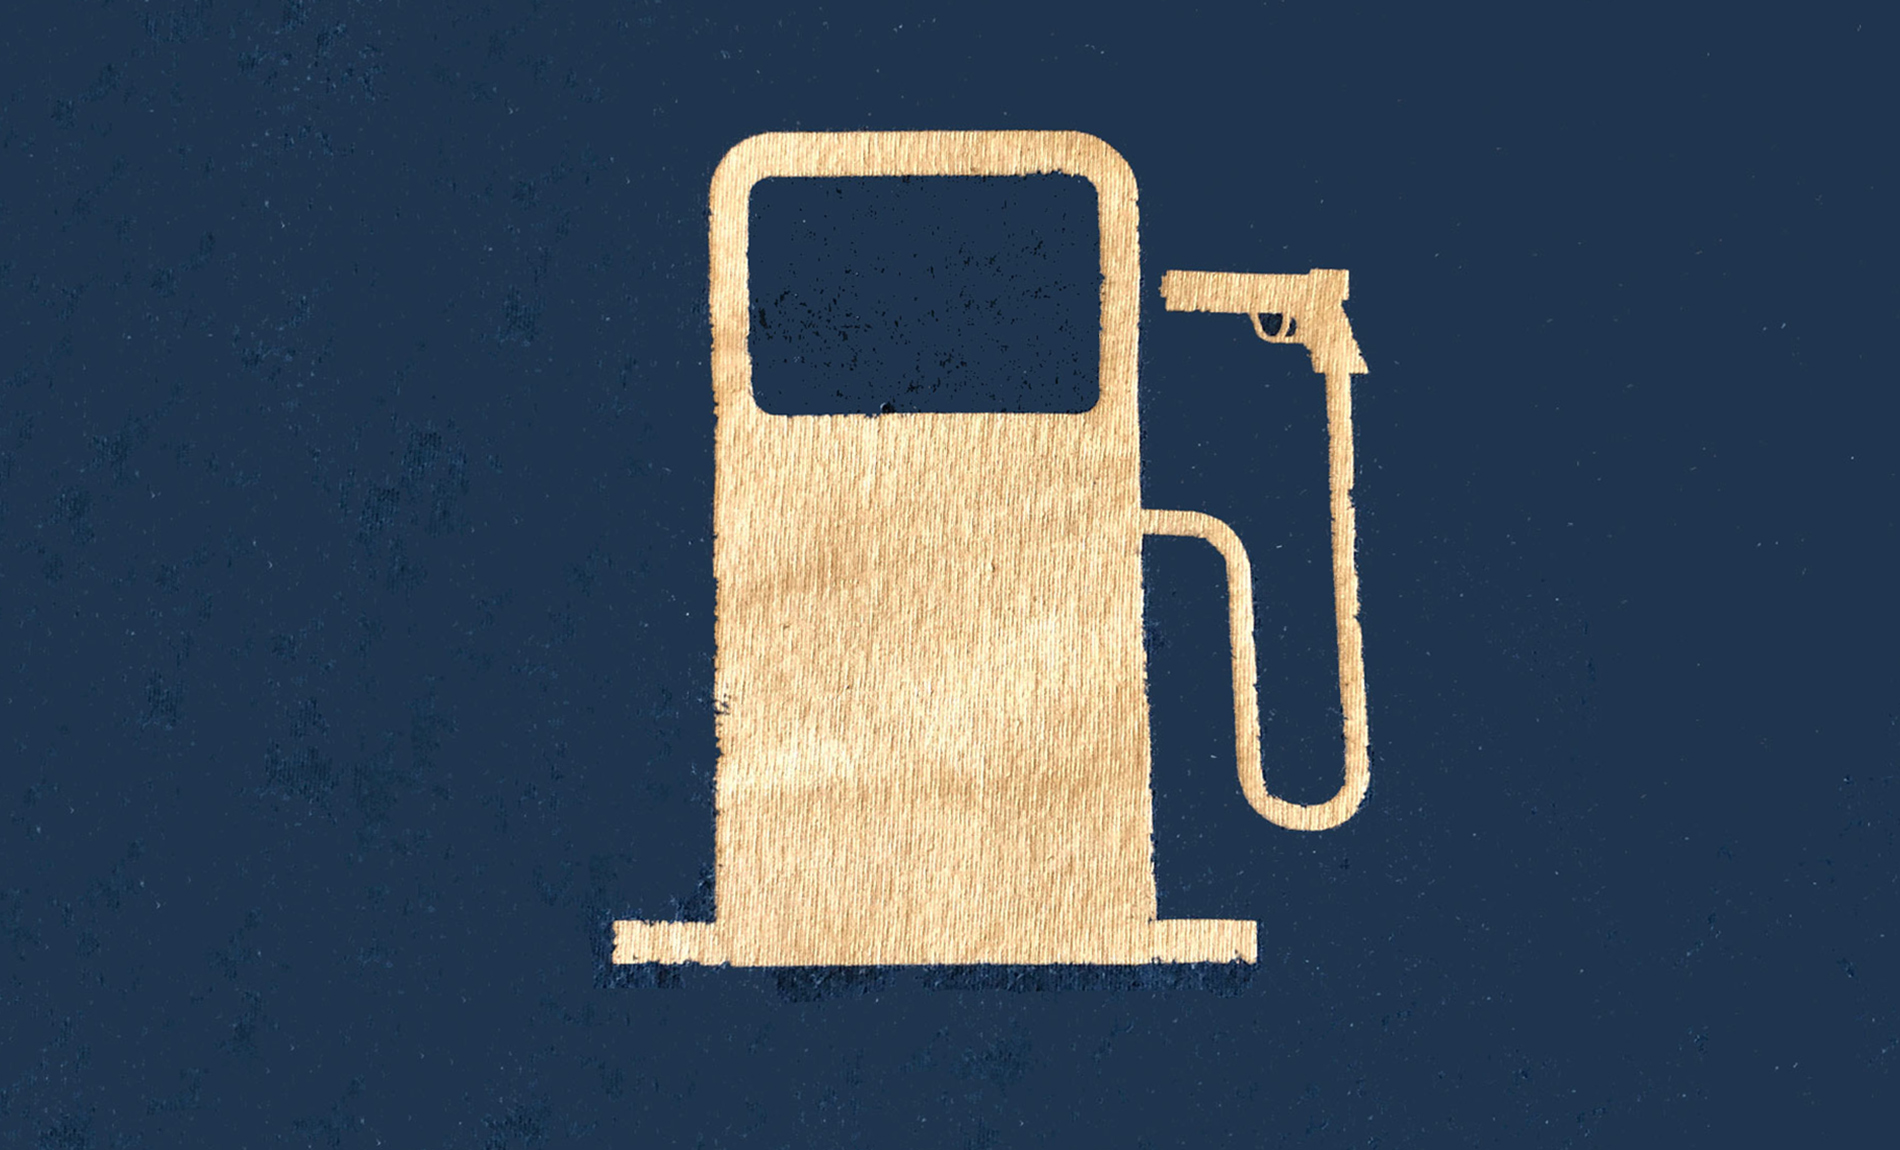 Patagonia gas pump logo